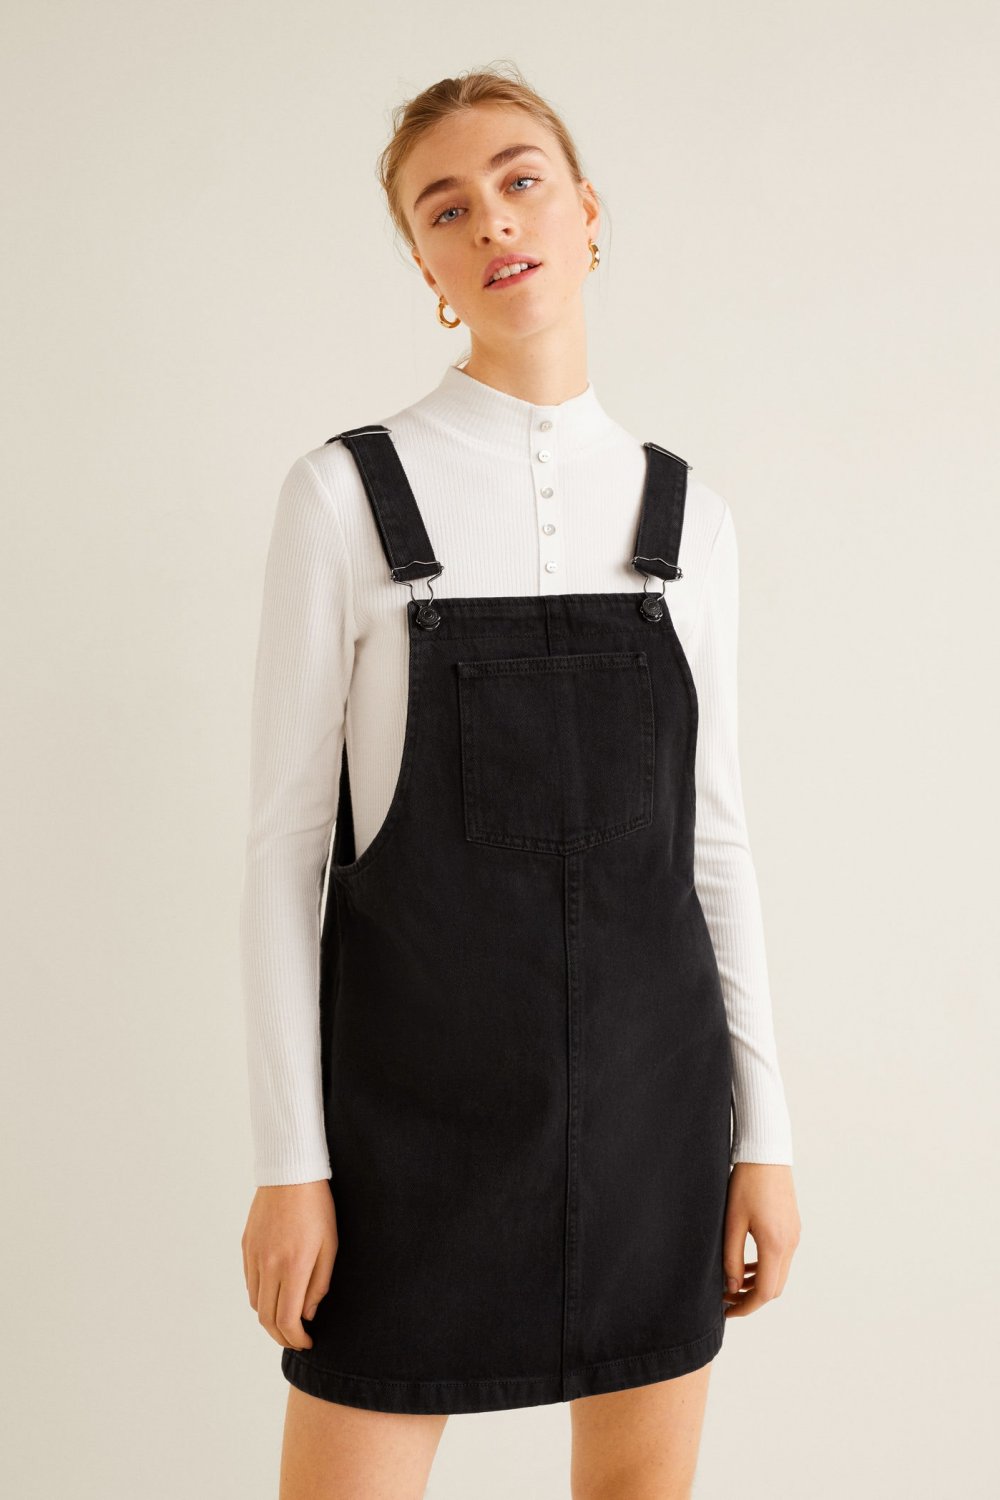 yanak Bakkal kâğıt  Mango Askılı Siyah Denim Kot Jile Mini Elbise | ElbiseBul